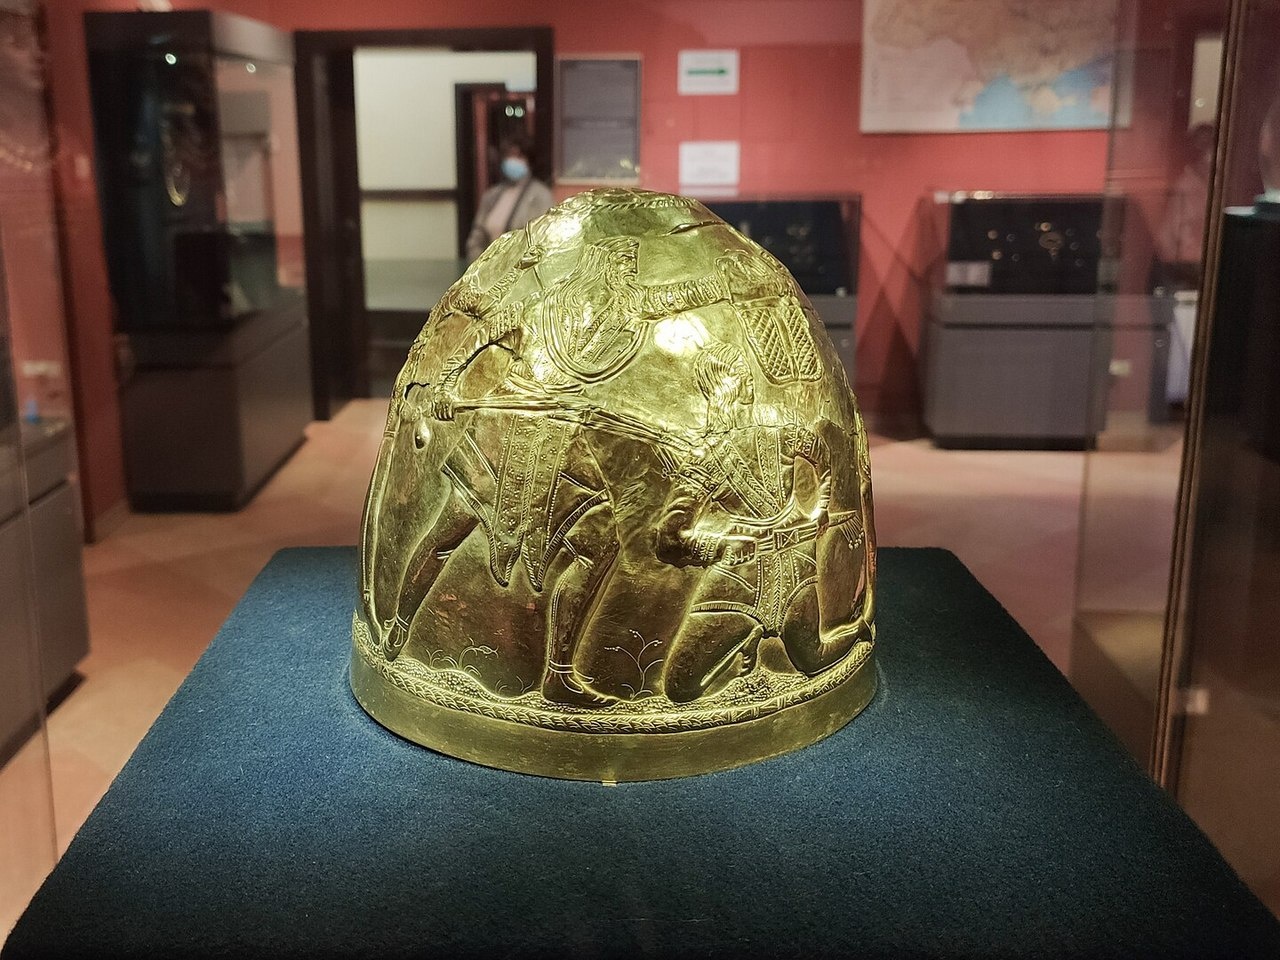 Скифский золотой шлем IV ст. до н.э., один из экспонатов, находившихся на выставке «Скифское золото» в Амстердаме уже «возвращён» на Украину, 2021 год.